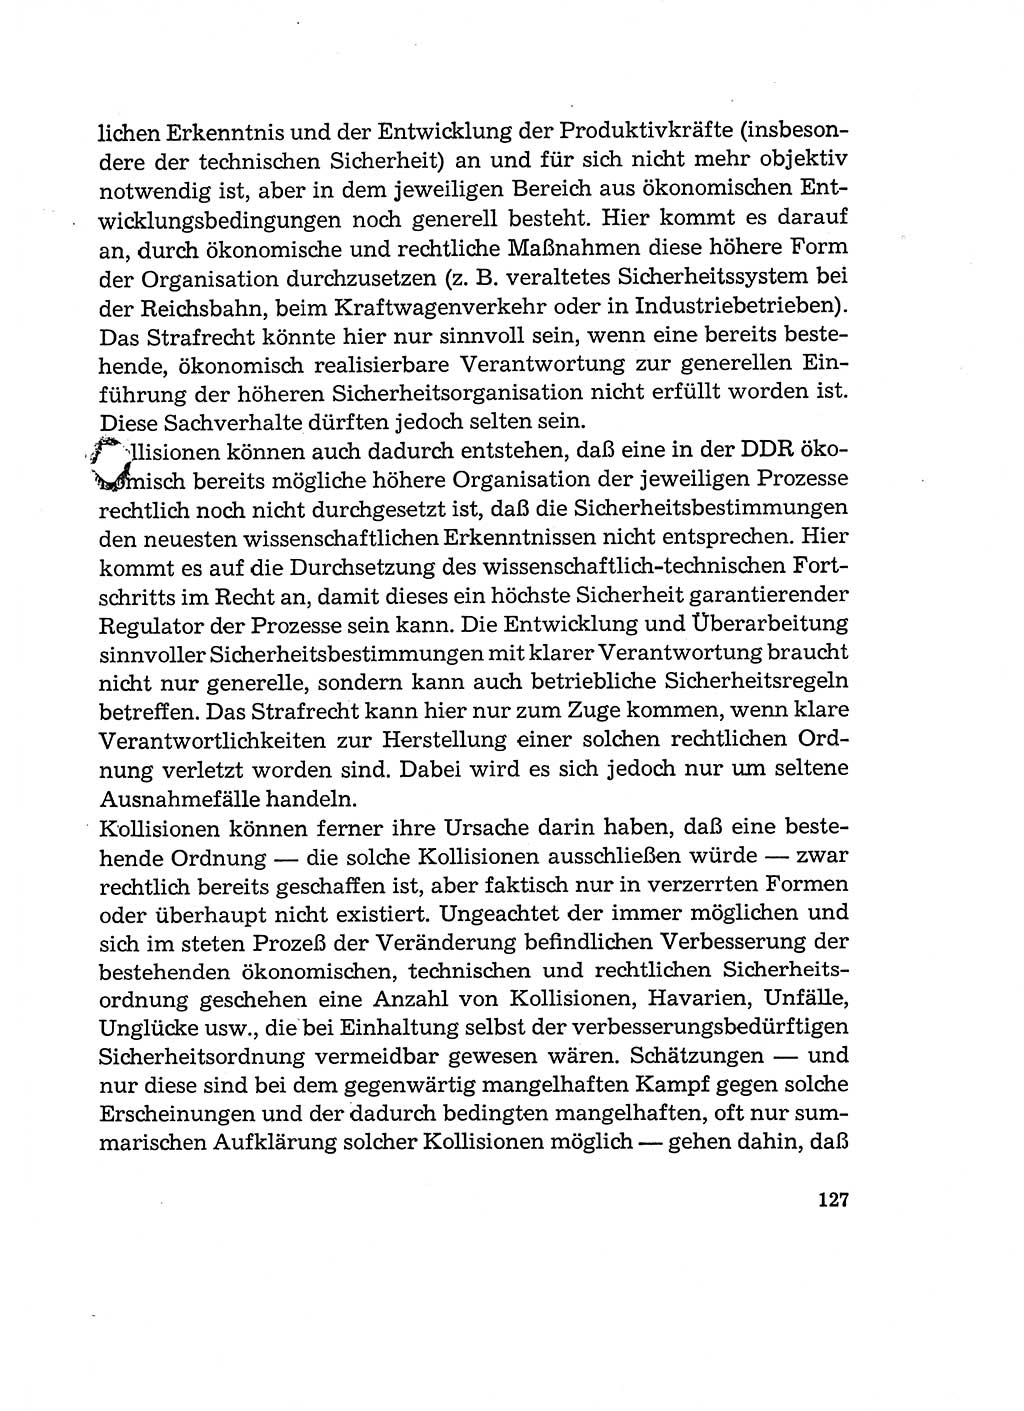 Verantwortung und Schuld im neuen Strafgesetzbuch (StGB) [Deutsche Demokratische Republik (DDR)] 1964, Seite 127 (Verantw. Sch. StGB DDR 1964, S. 127)